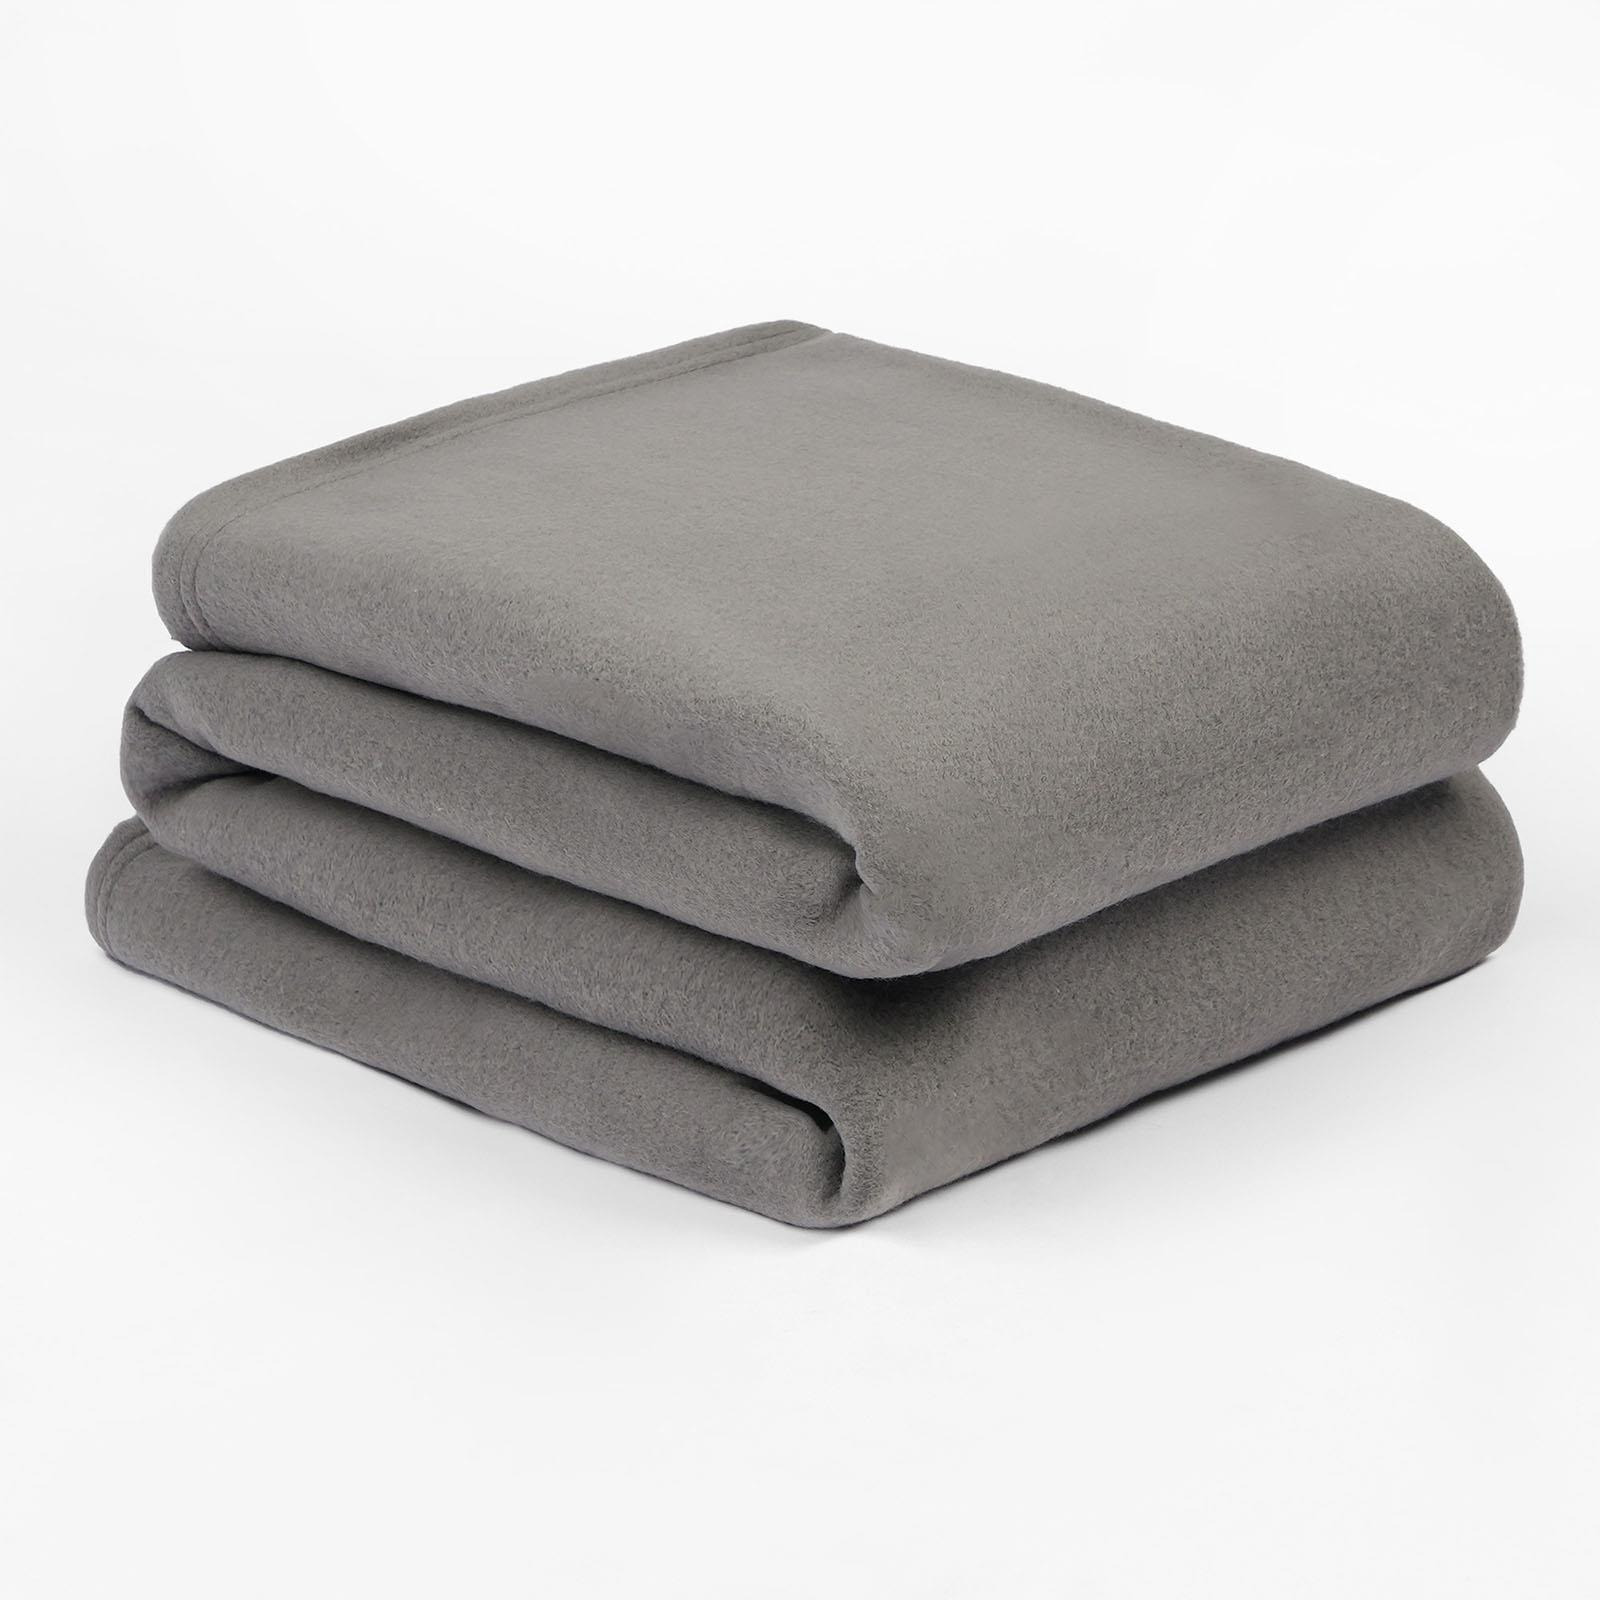 Warm Plain Fleece Throw Over Bed Blanket - image 1